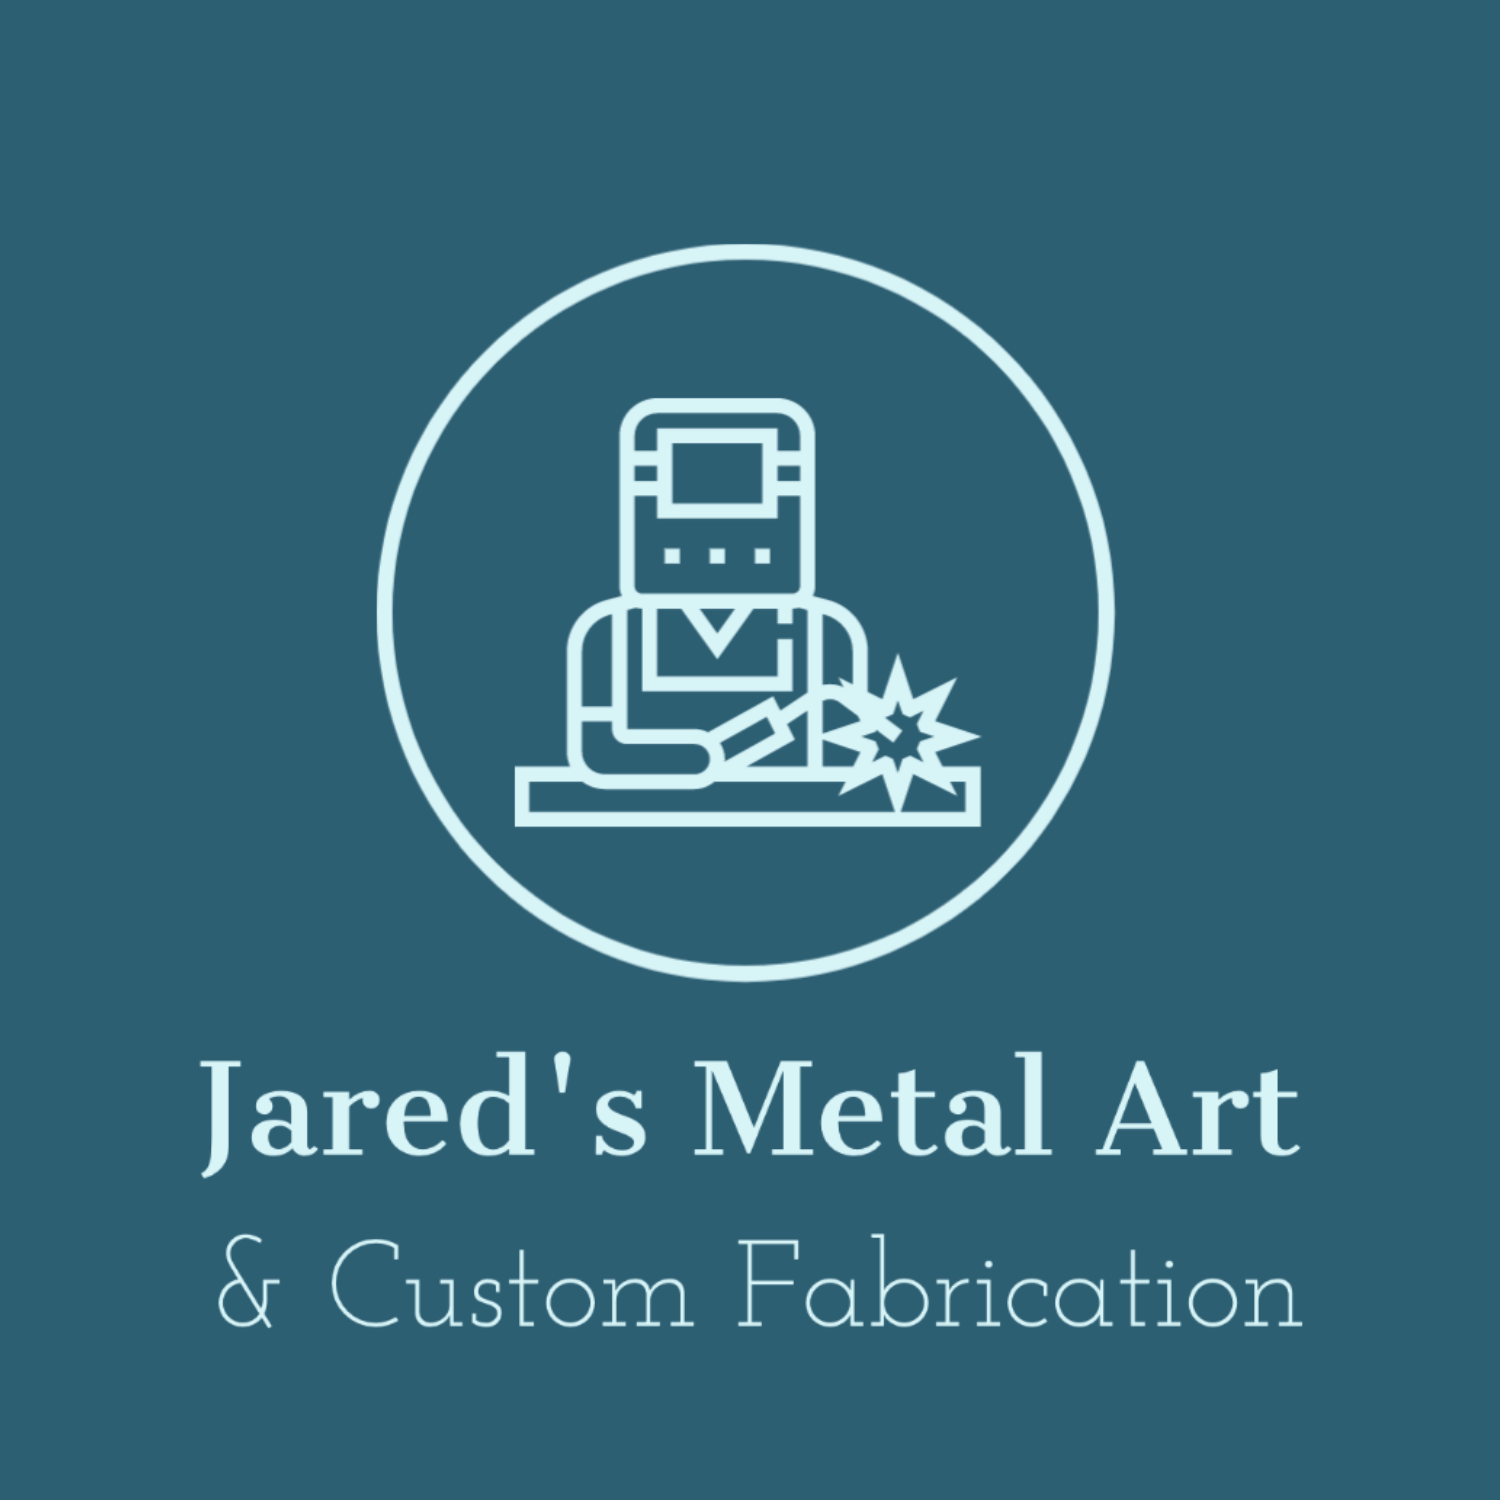 Jared's Metal Art